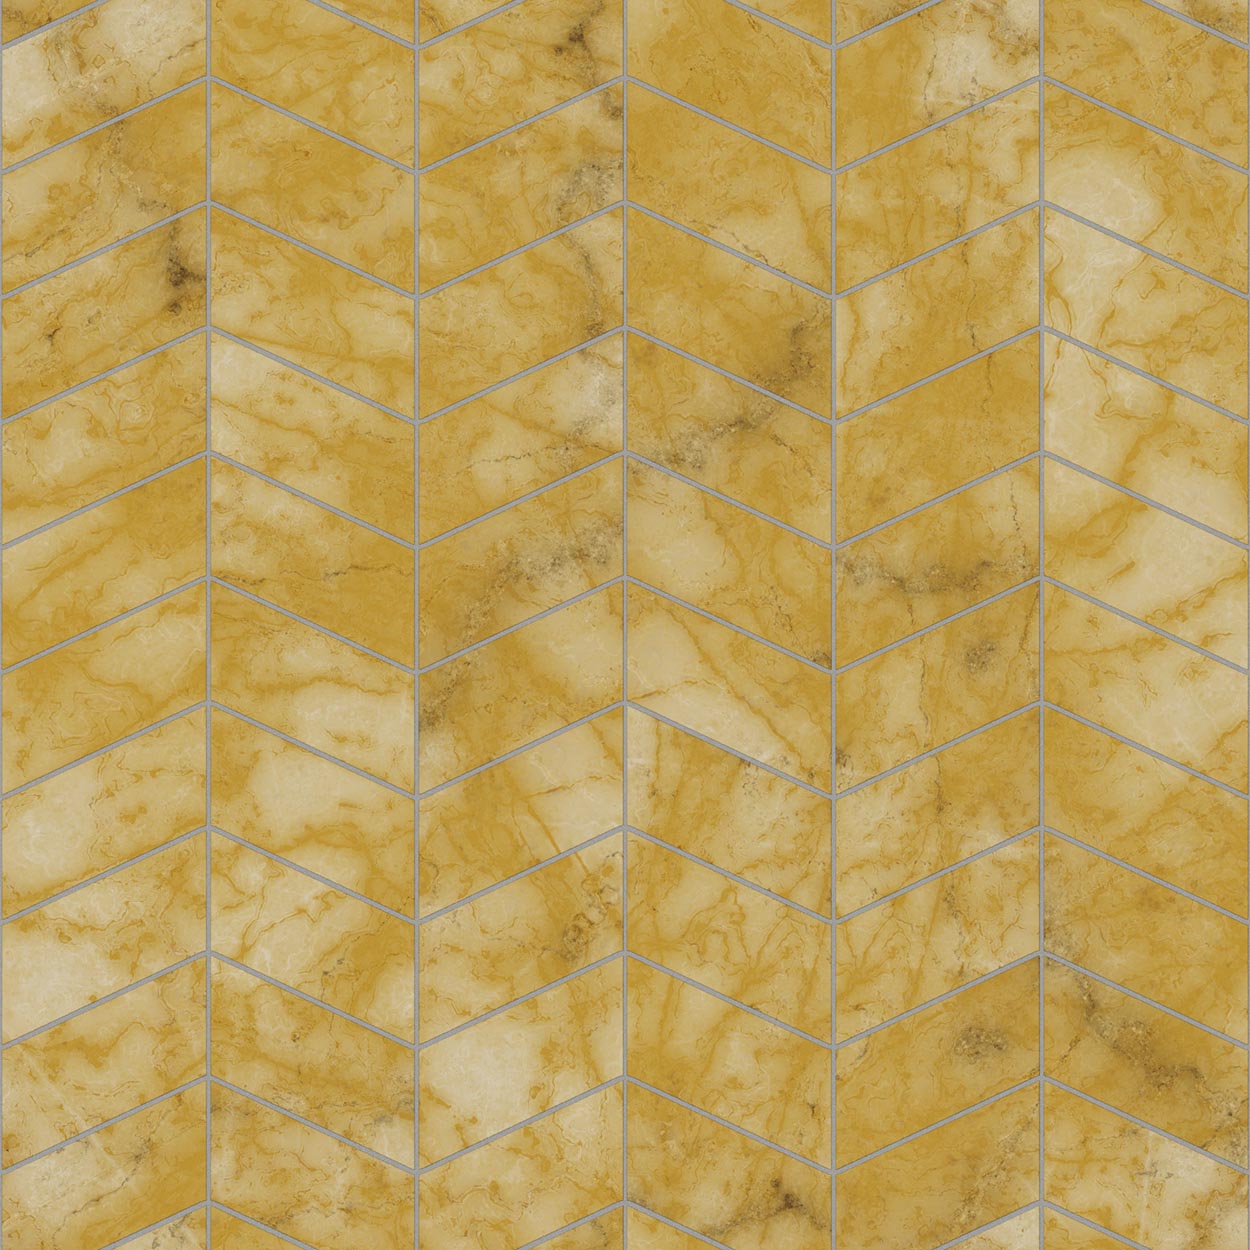 Siena marble herringbone tile